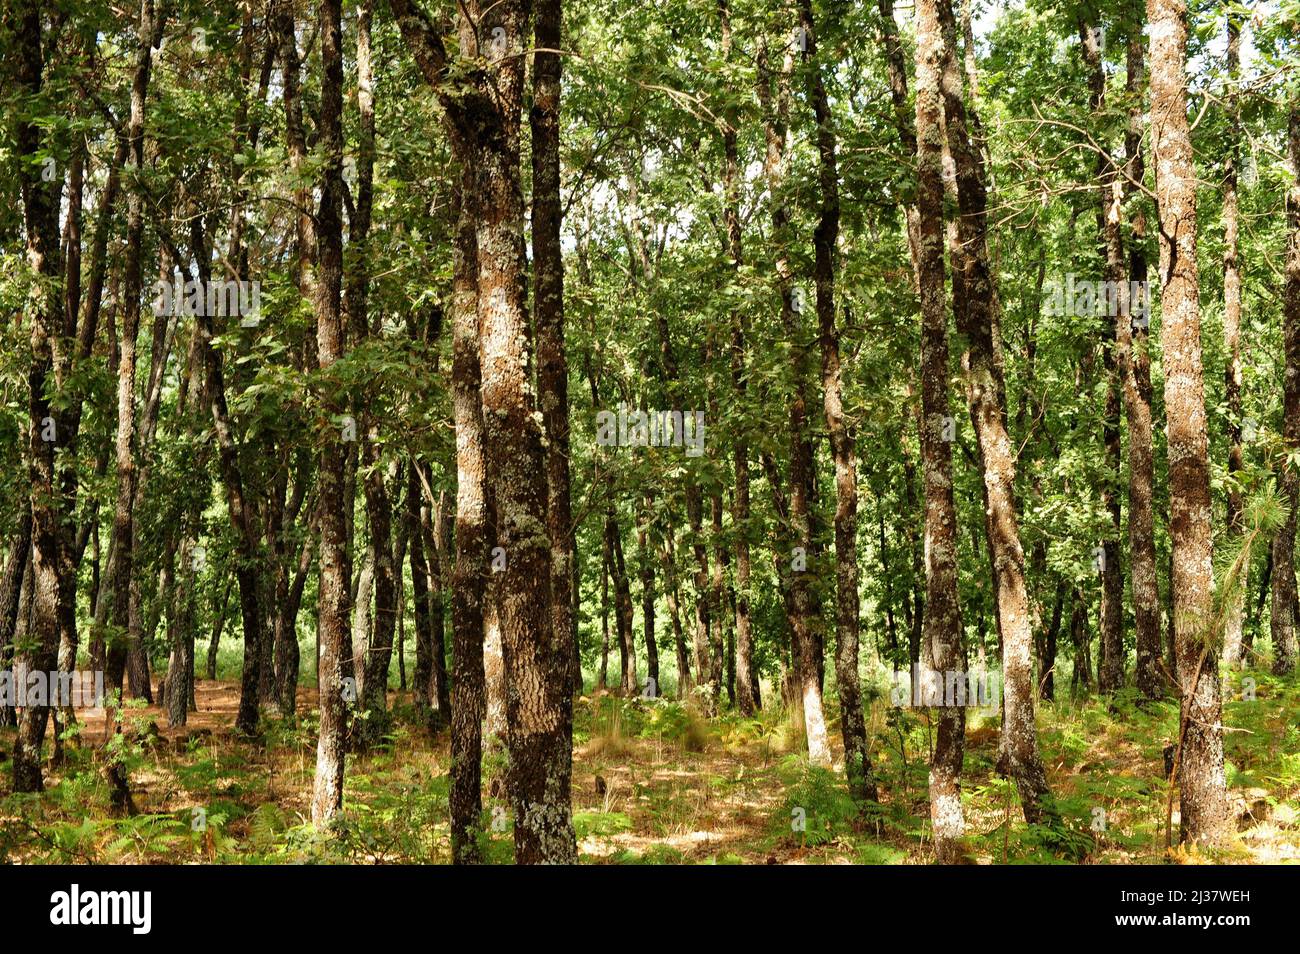 El roble pirenaico (Quercus pyrenaica) es un árbol caducifolio nativo de la cuenca occidental del Mediterráneo (Península Ibérica, montañas del oeste de Francia y Marruecos). Foto de stock